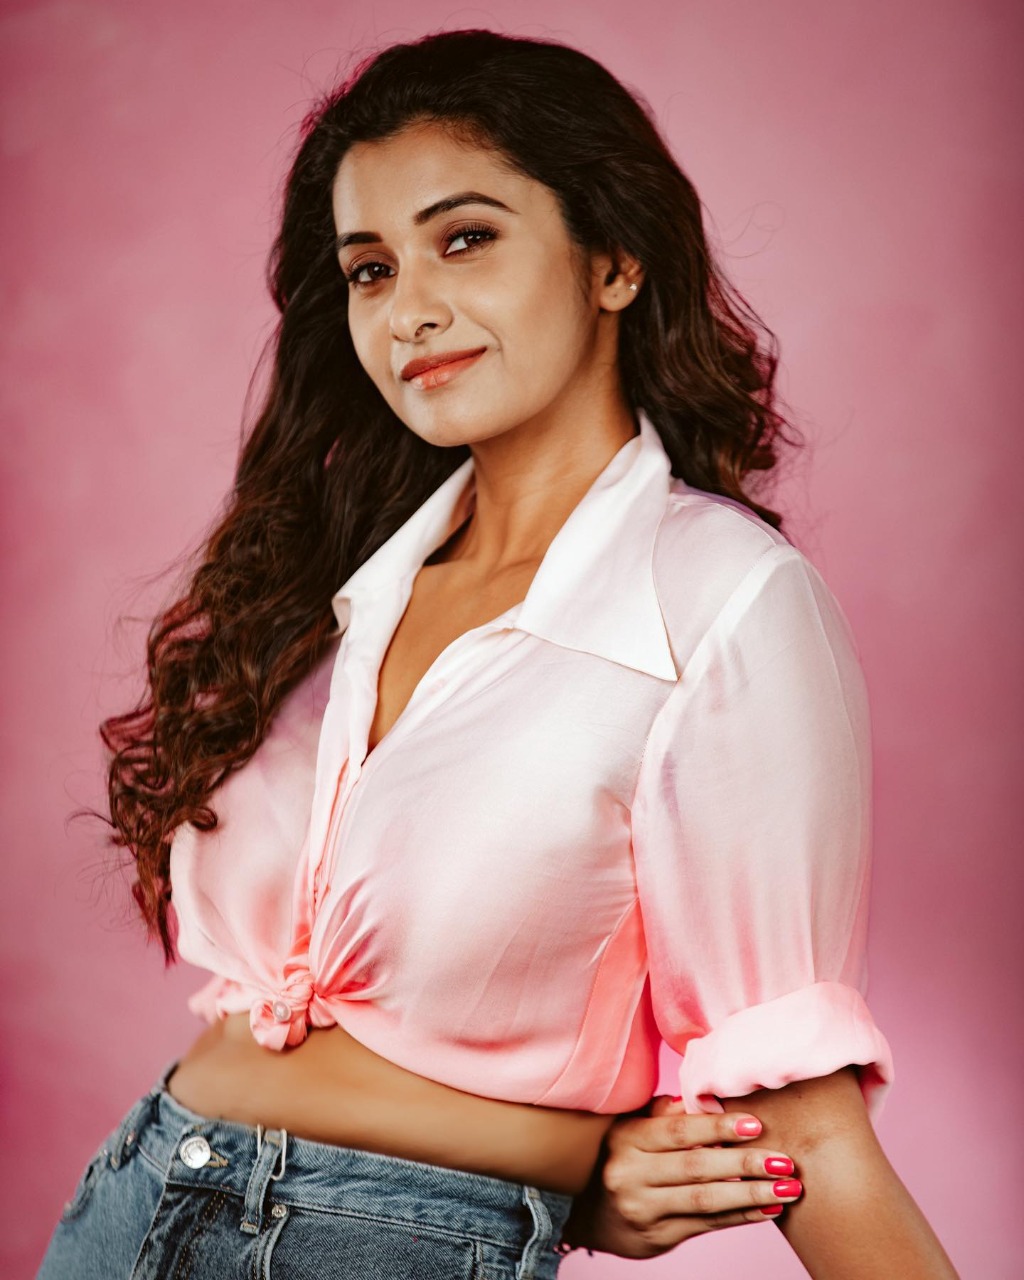  நடிகை பிரியா பவானி சங்கர். (படம்: இன்ஸ்டாகிராம்)